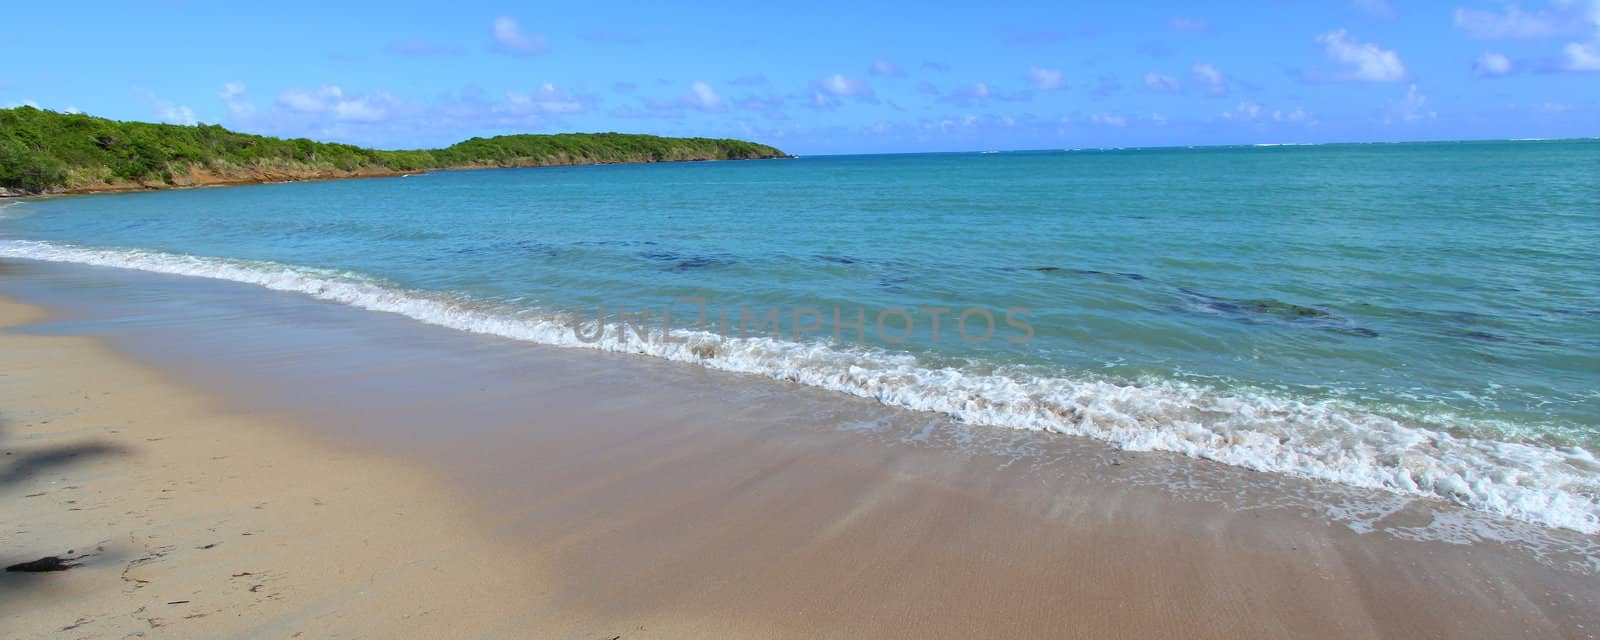 Seven Seas Beach - Puerto Rico by Wirepec